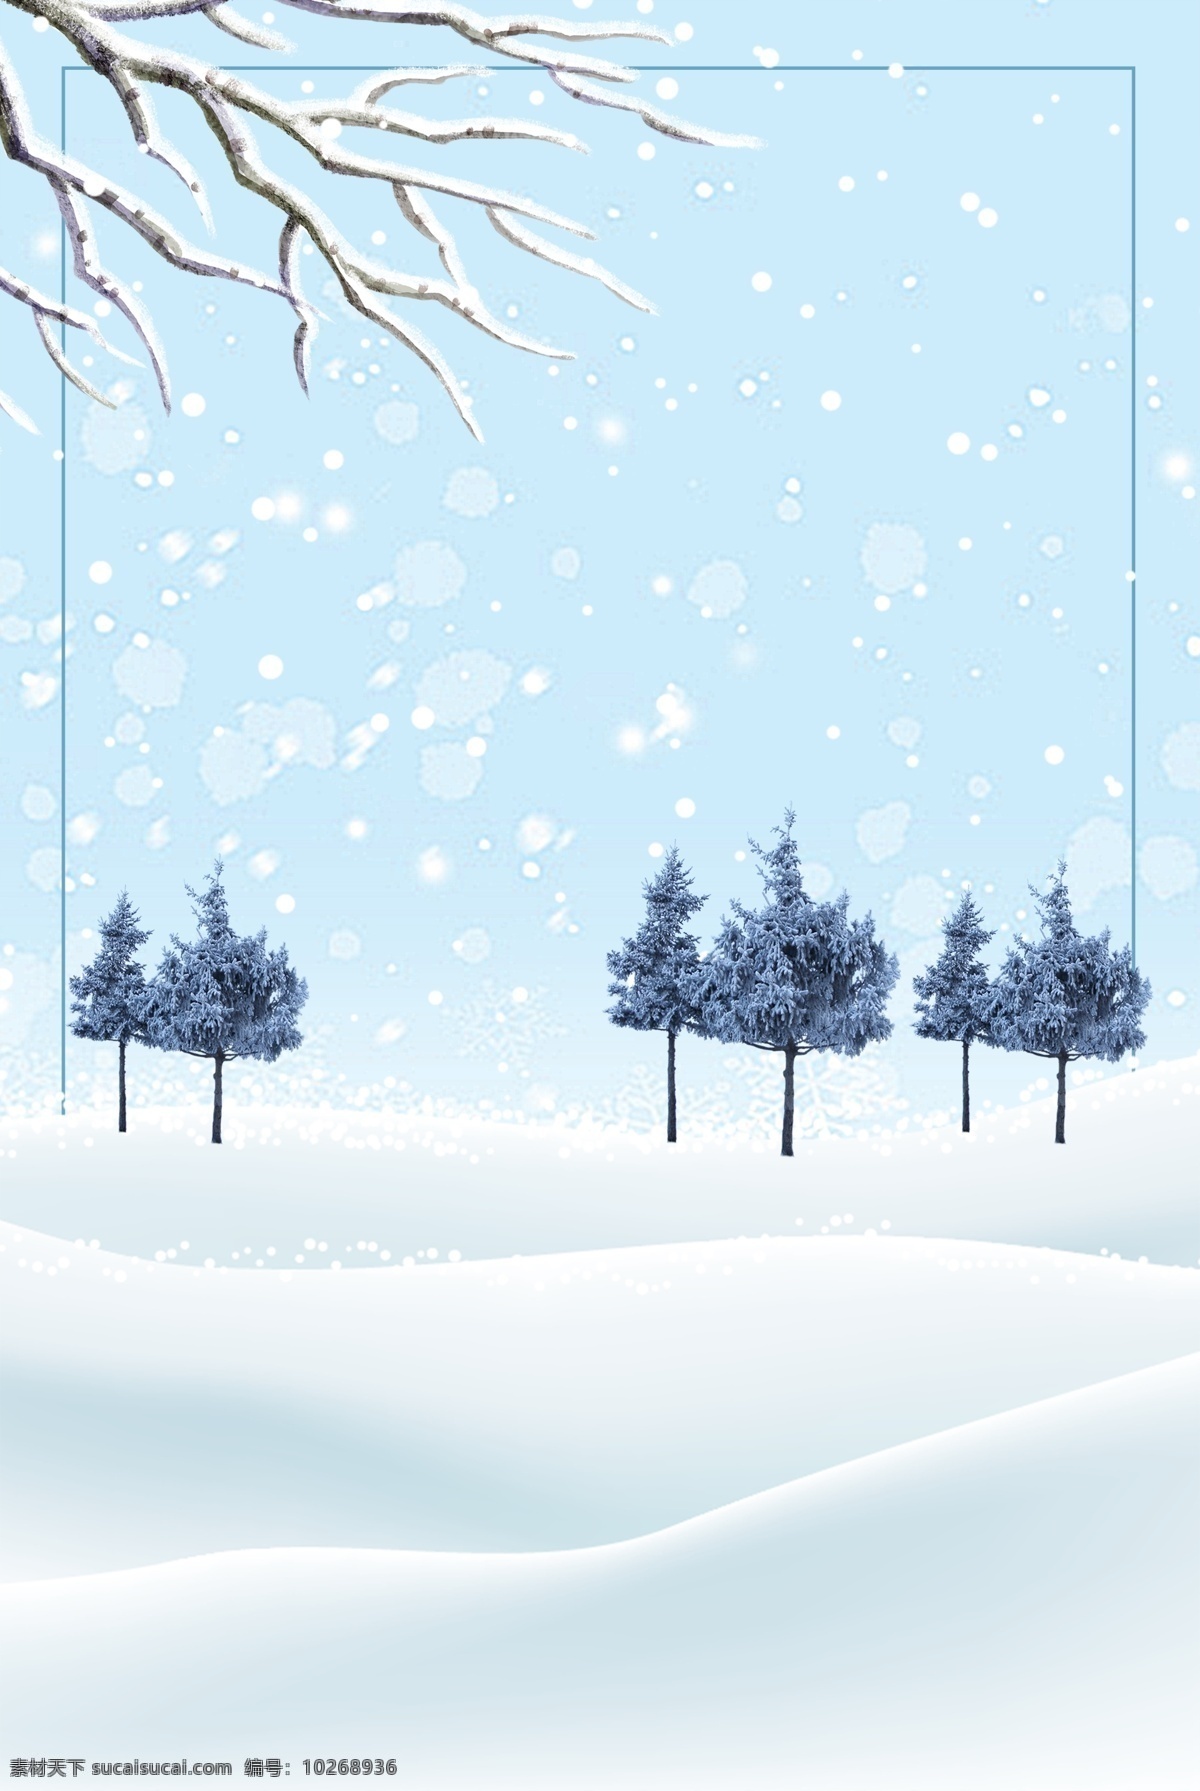 冬季 节气 雪地 手绘 海报 背景 雪 简约 蓝色